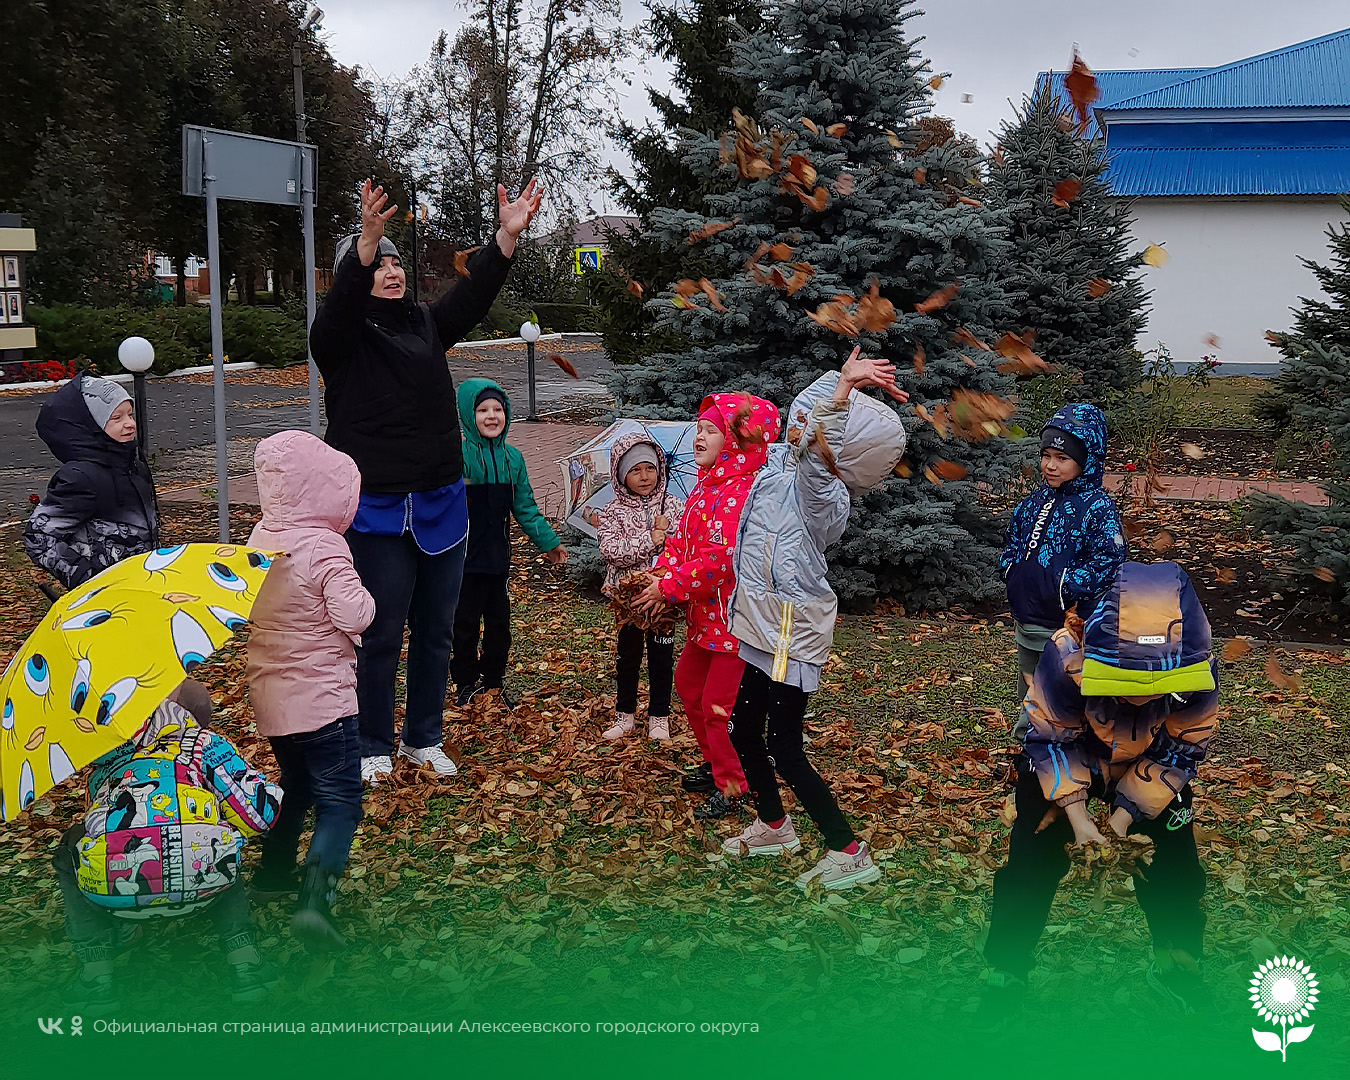 В детских садах Алексеевского городского округа прошёл День шуршания листьями и День собирания букетов из листьев.